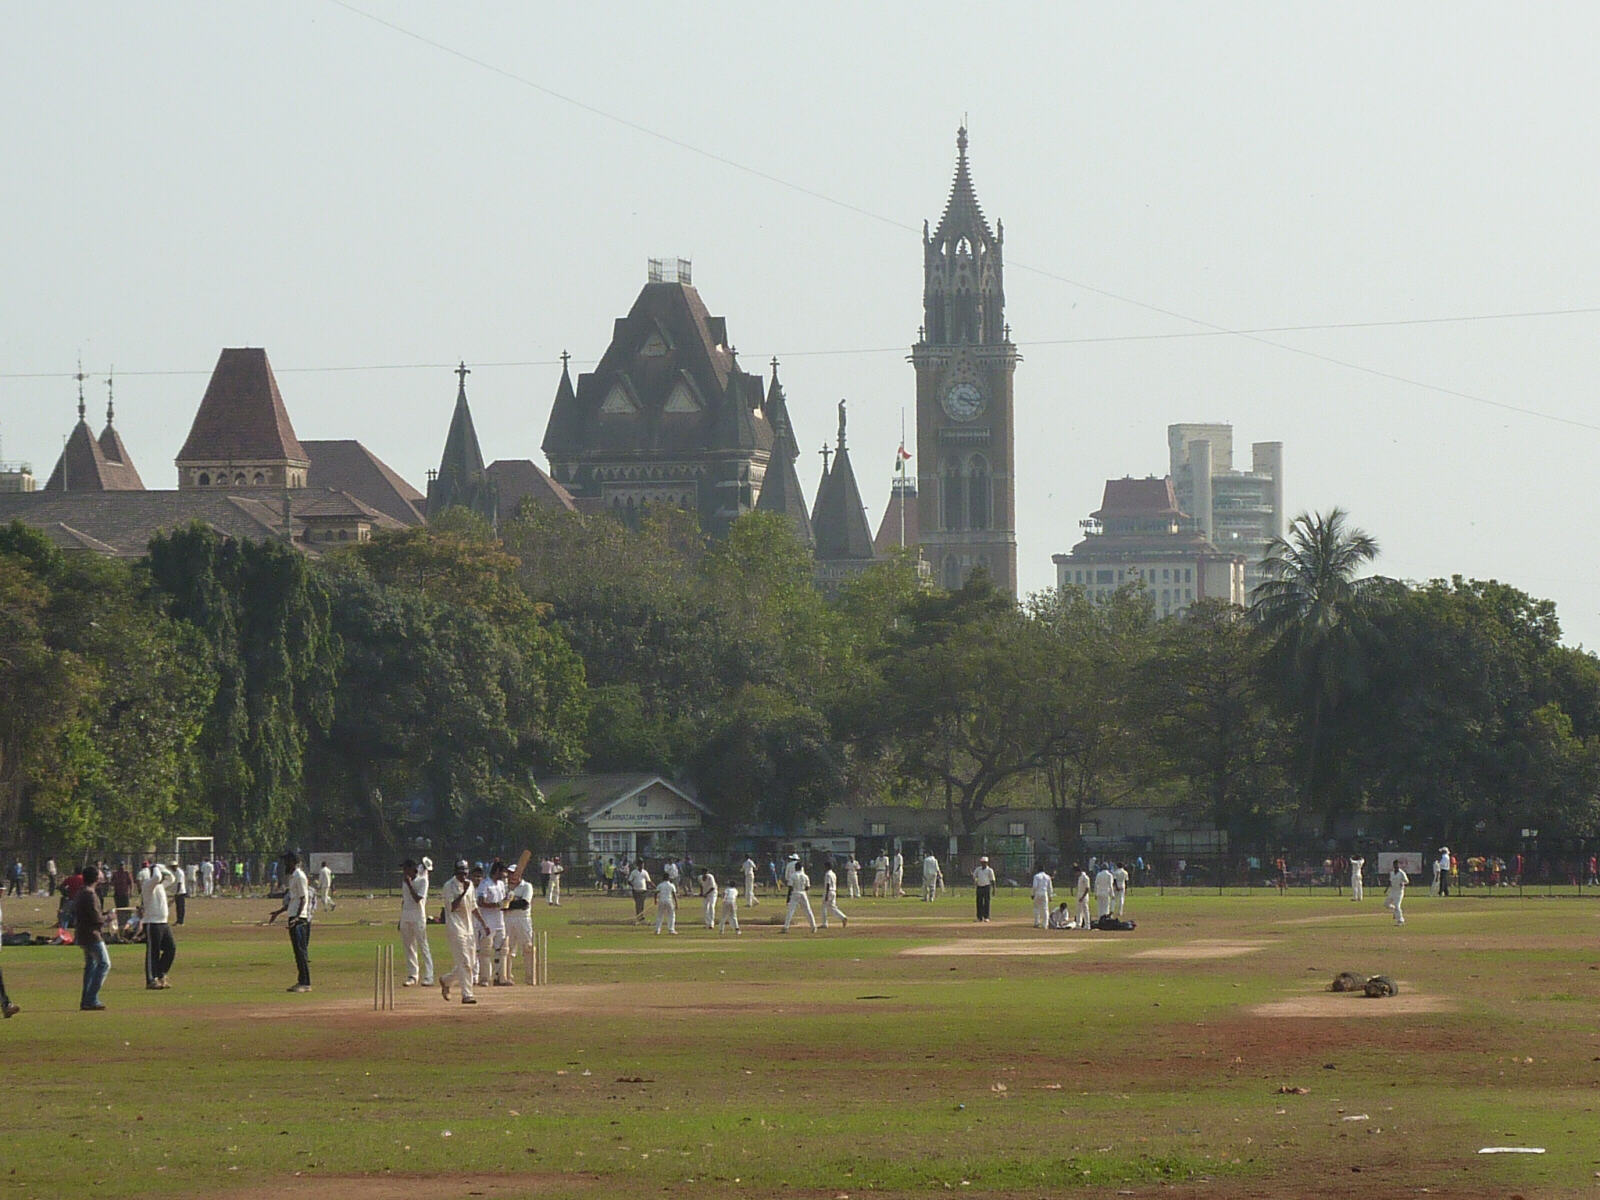 Cricket on the Maidan in Mumbai, India